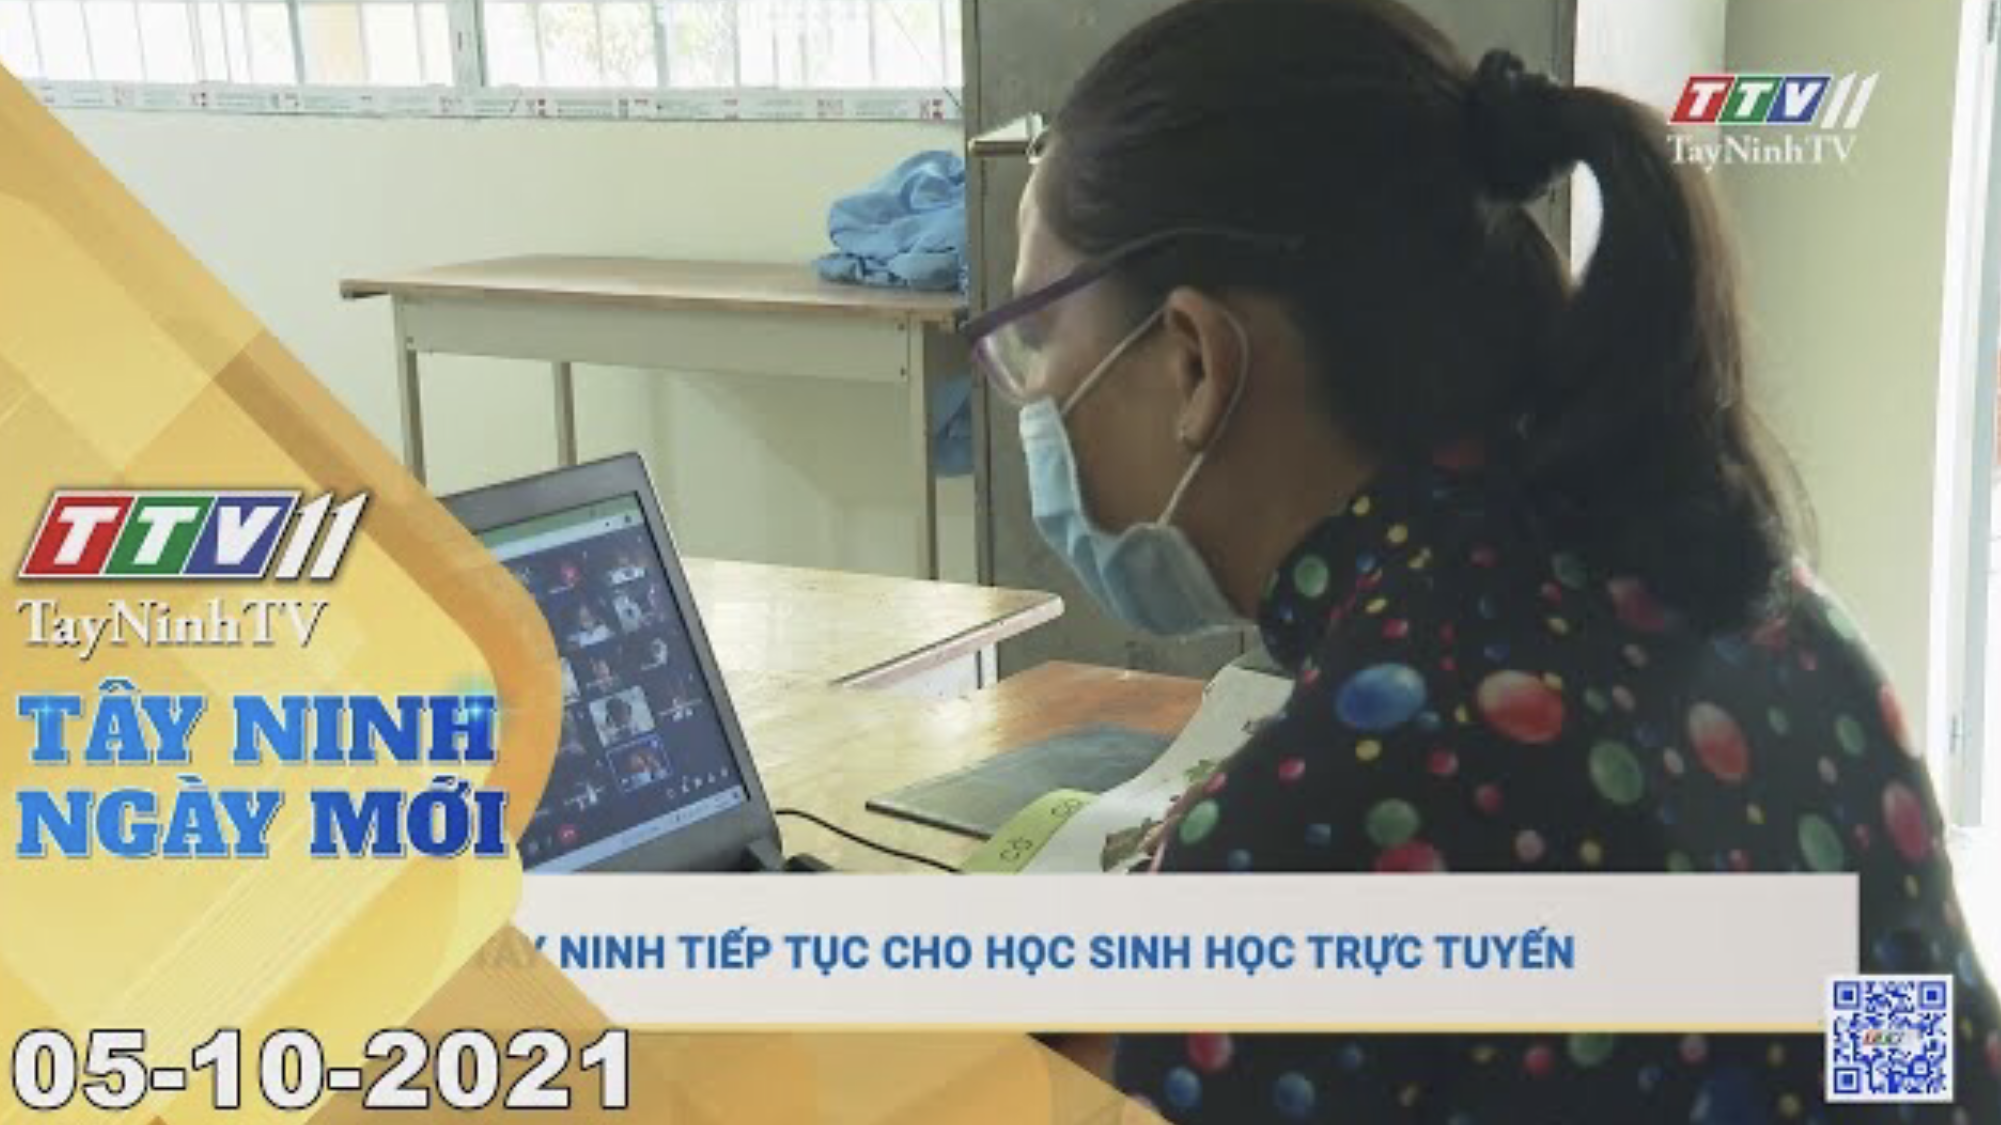 TÂY NINH NGÀY MỚI 05/10/2021 | Tin tức hôm nay | TayNinhTV